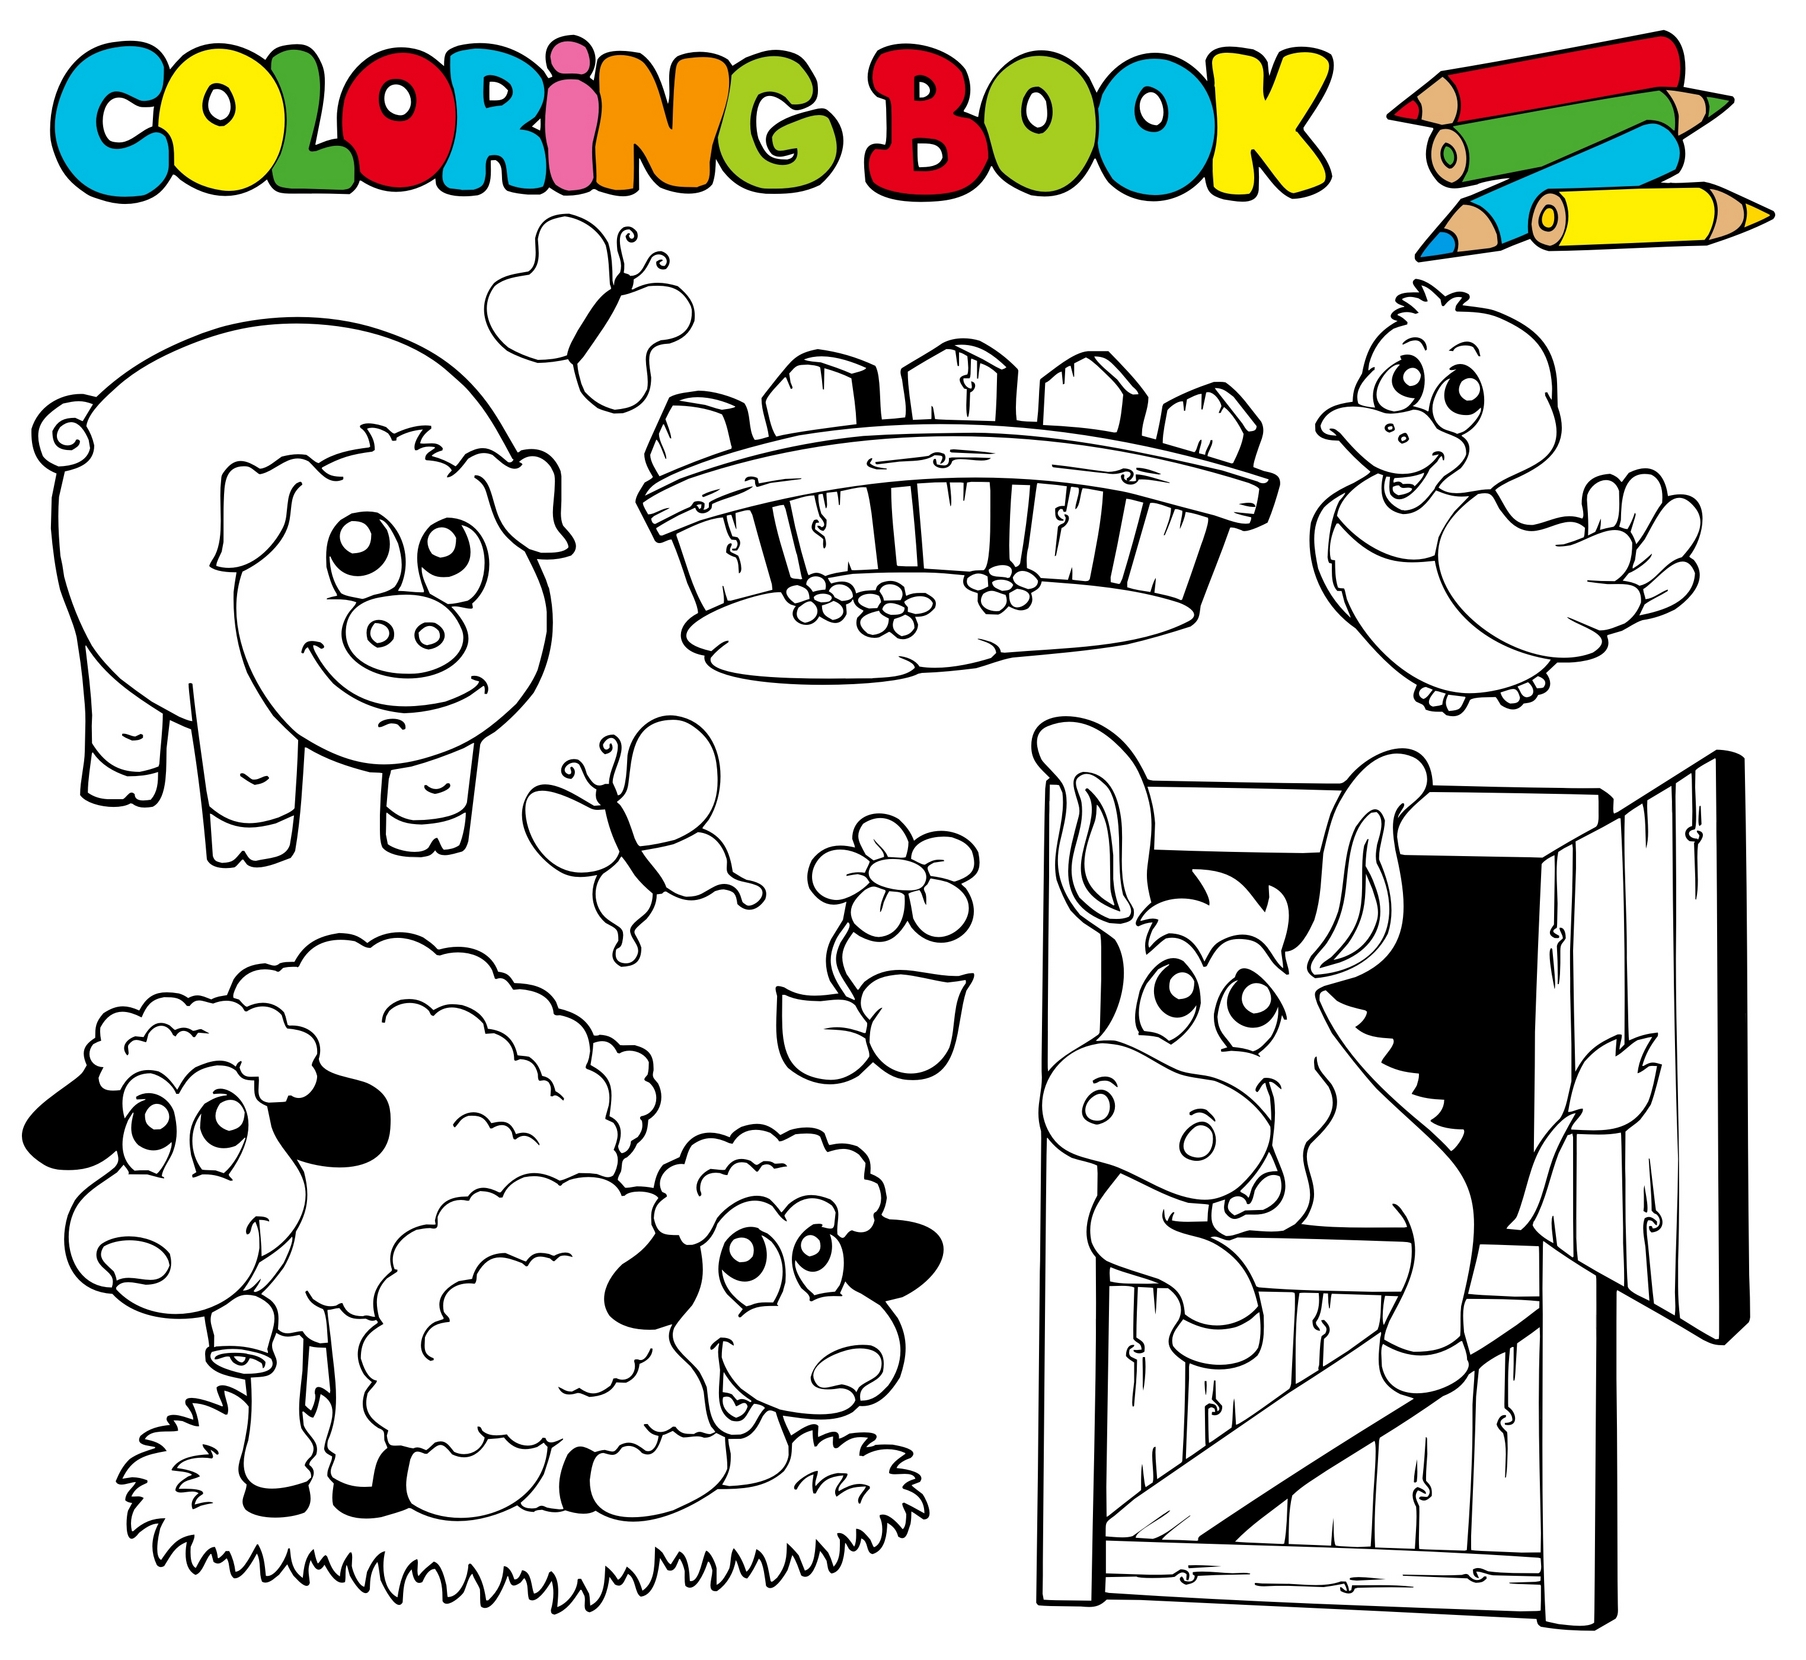 Planse, fise si imagini de colorat pentru copii cu animale